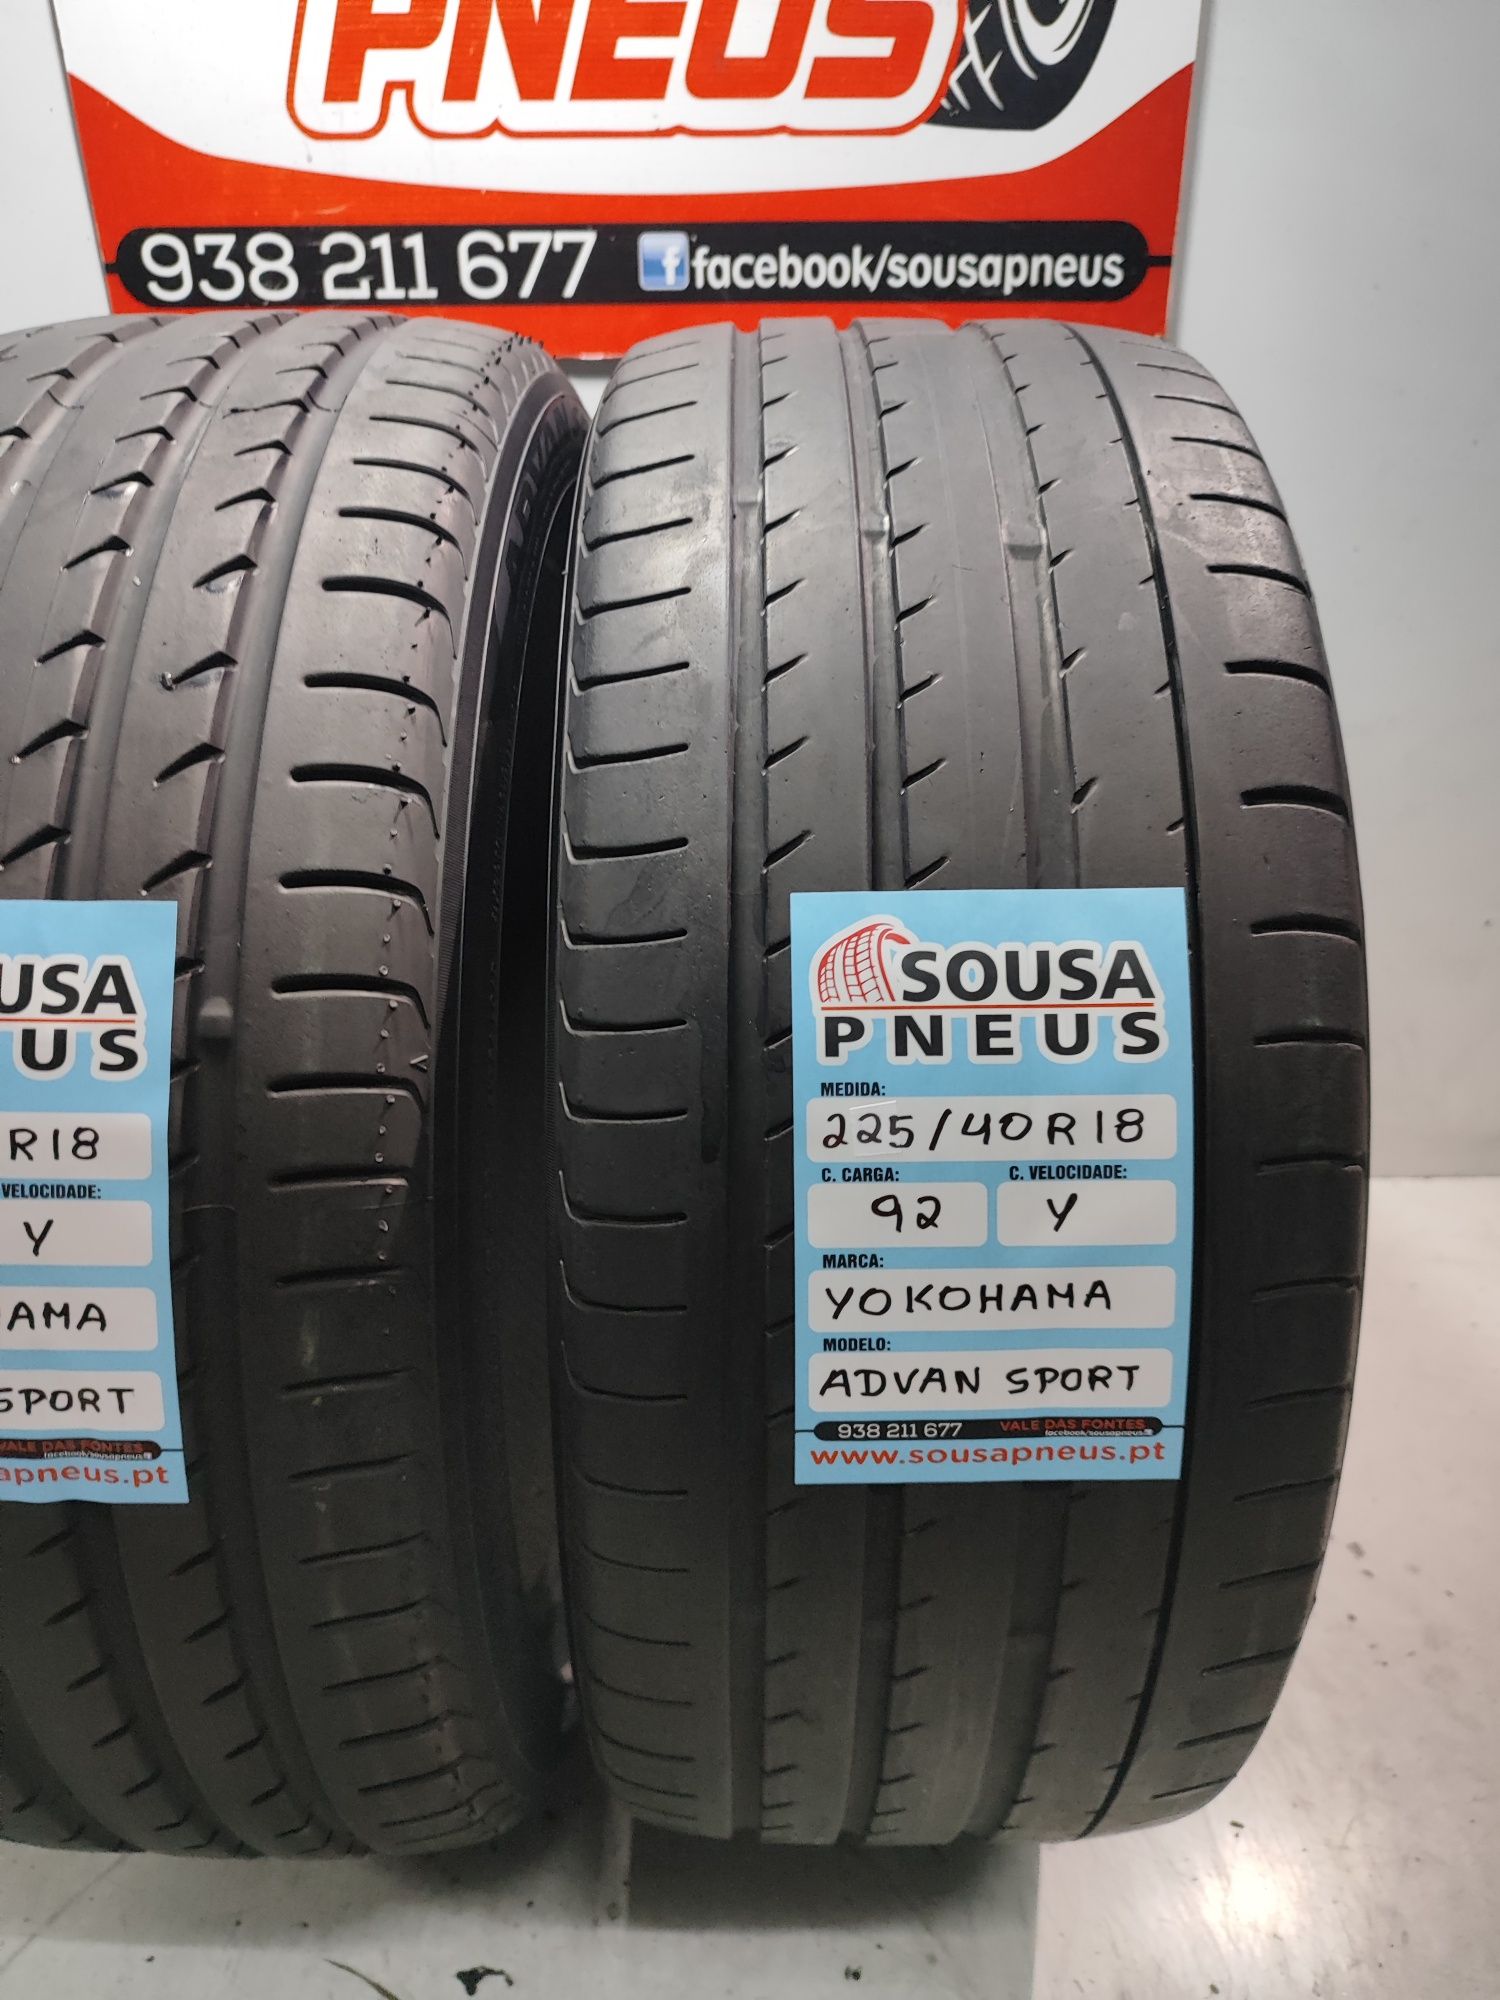 2 pneus  semi novos Yokoama 225/40R28 92Y - Oferta da Entrega